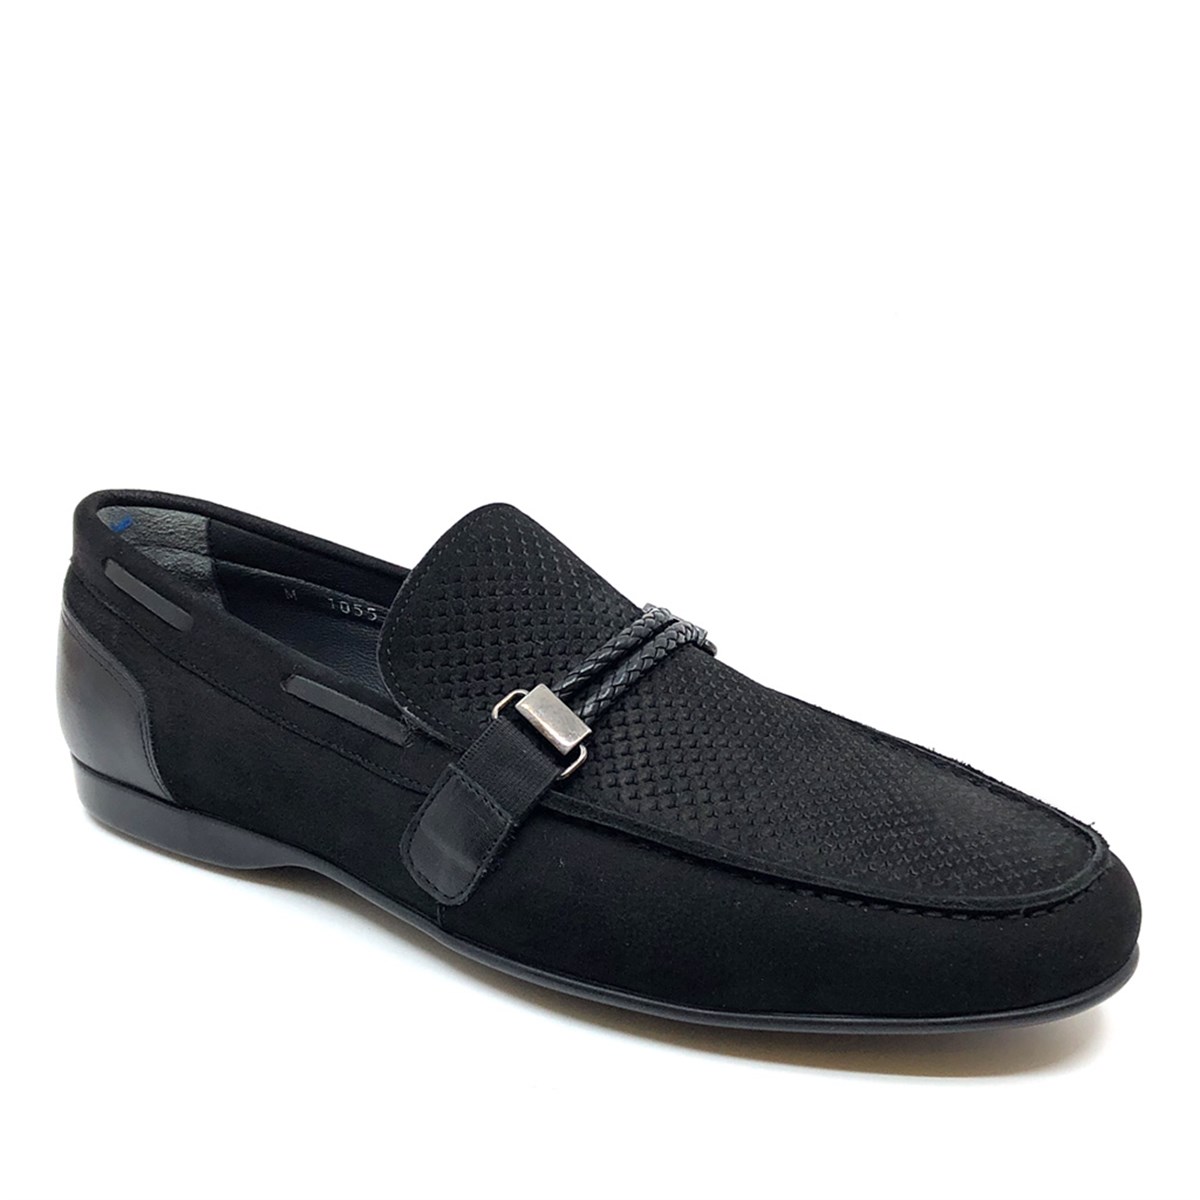 Erkek Bağcıksız Yazlık Loafer  Nubuk Hakiki Deri Ayakkabı, Renk: Siyah Süet, Beden: 39